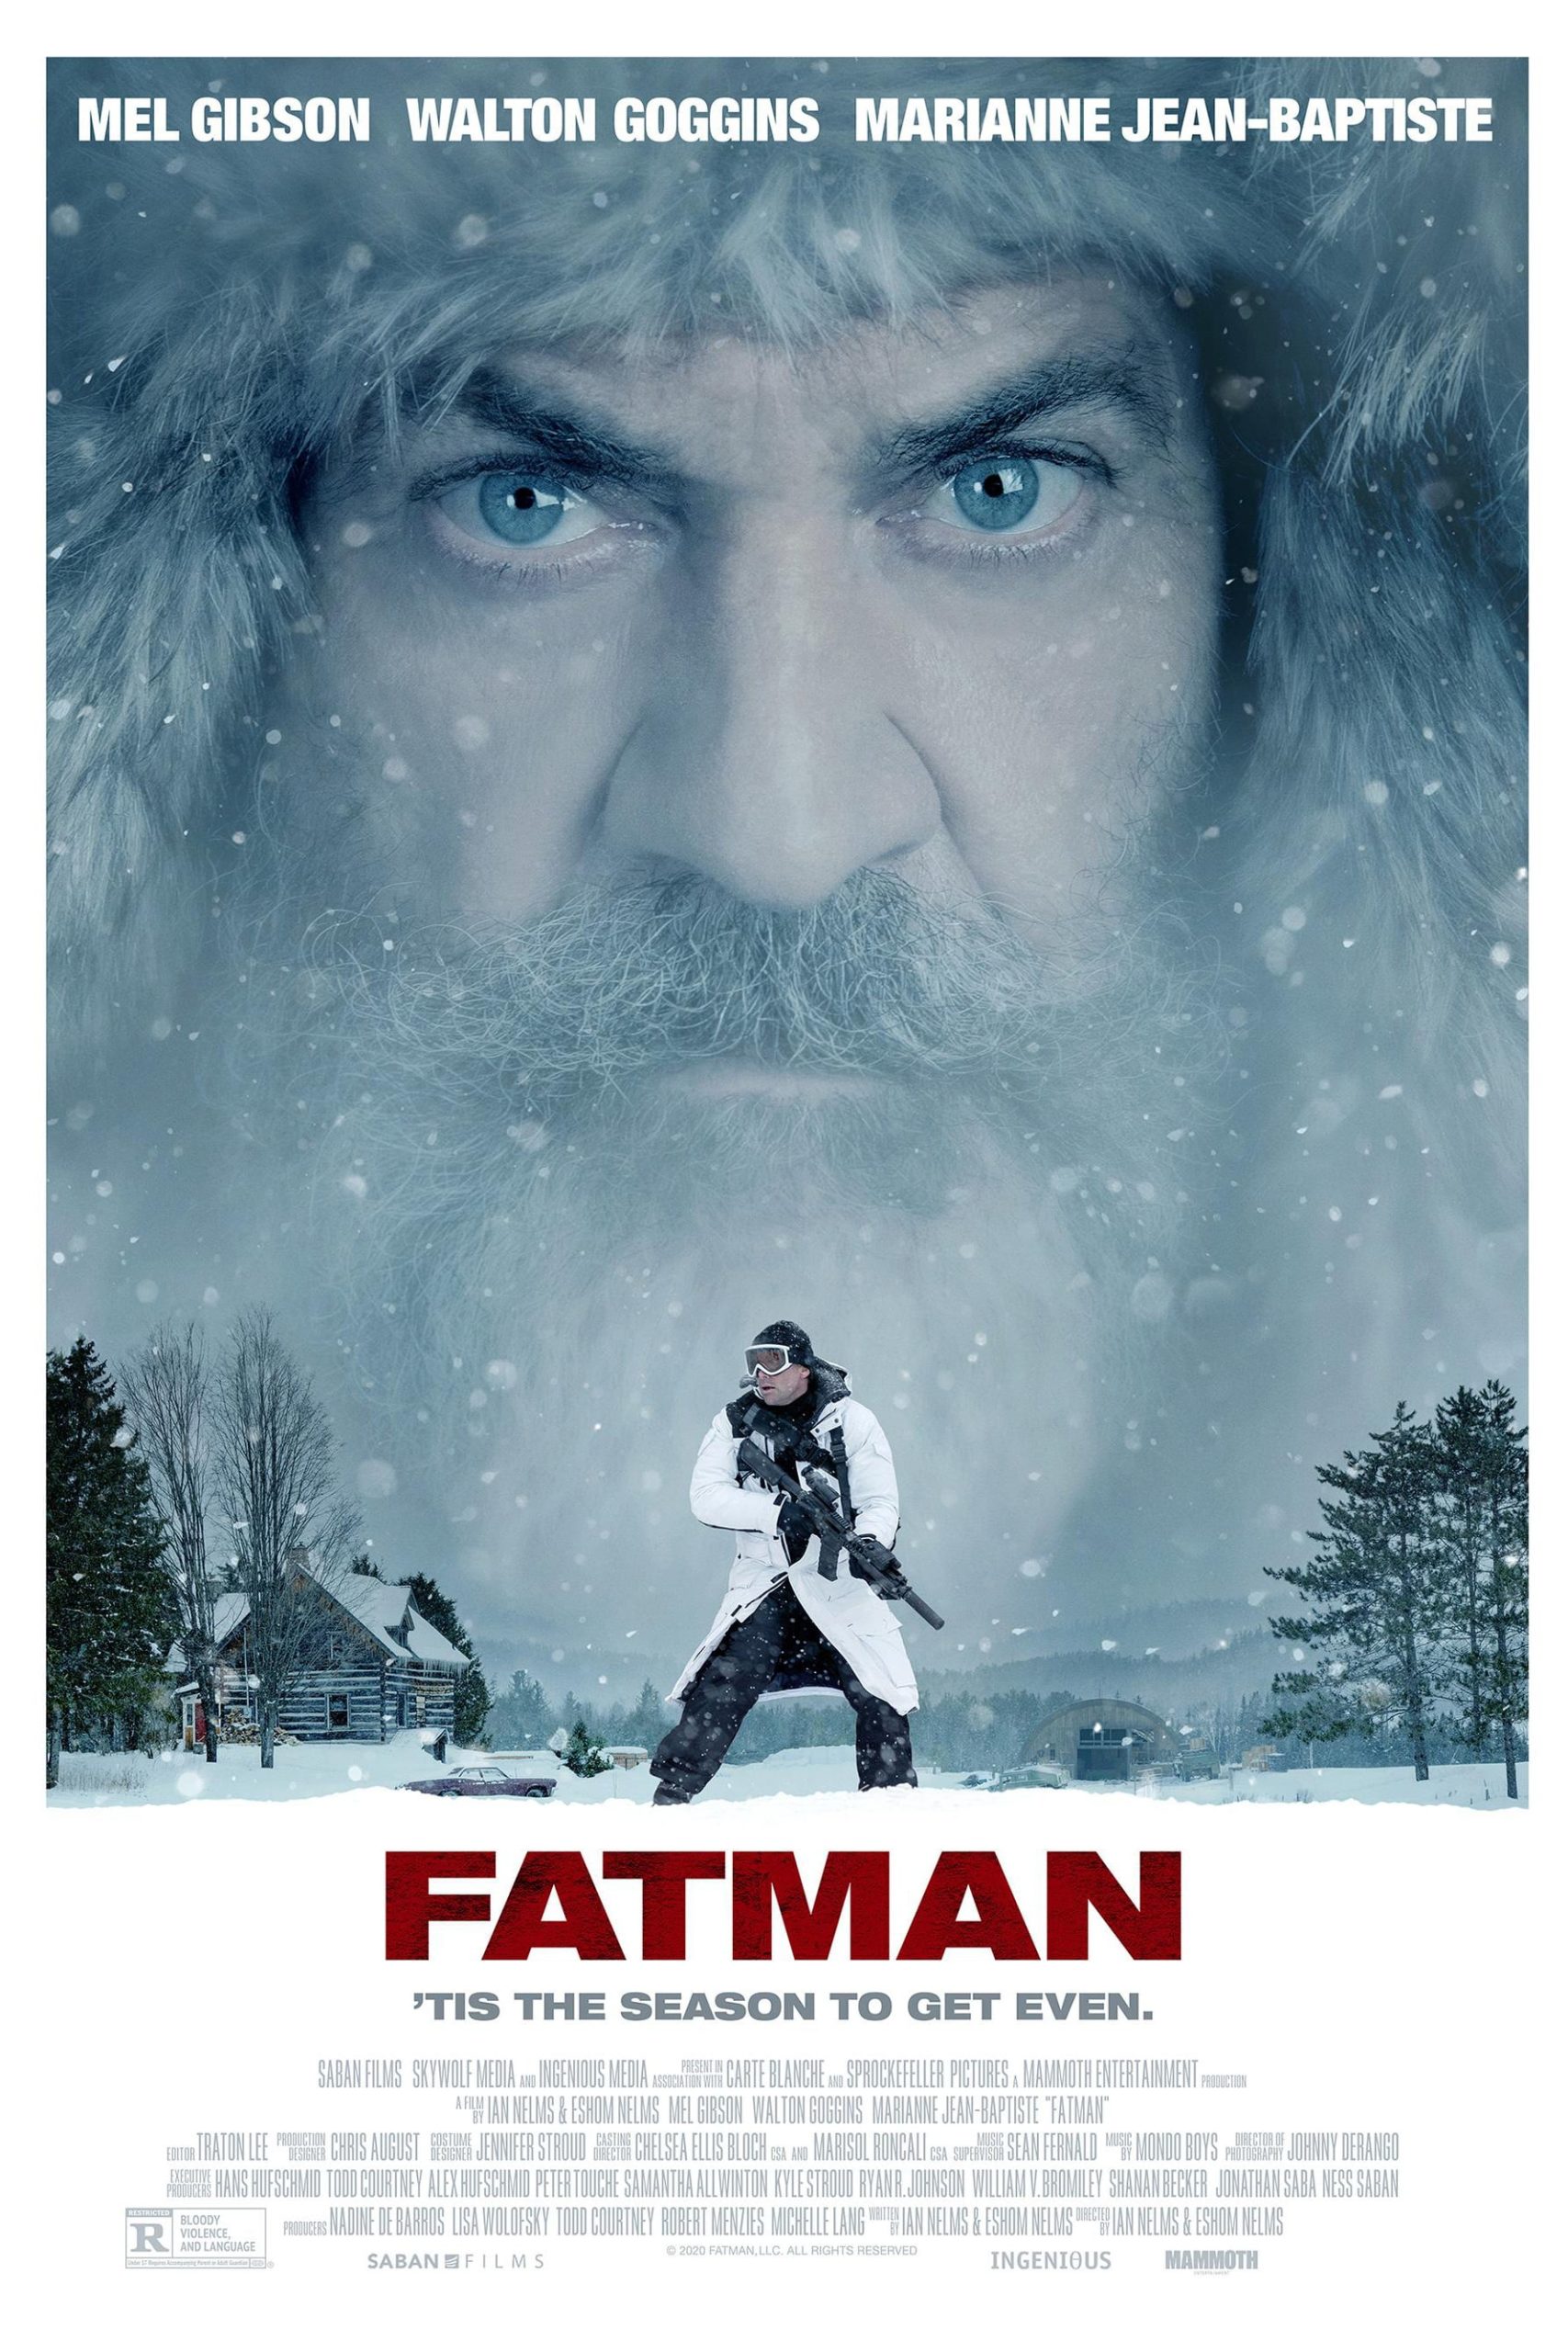 Fatman poster